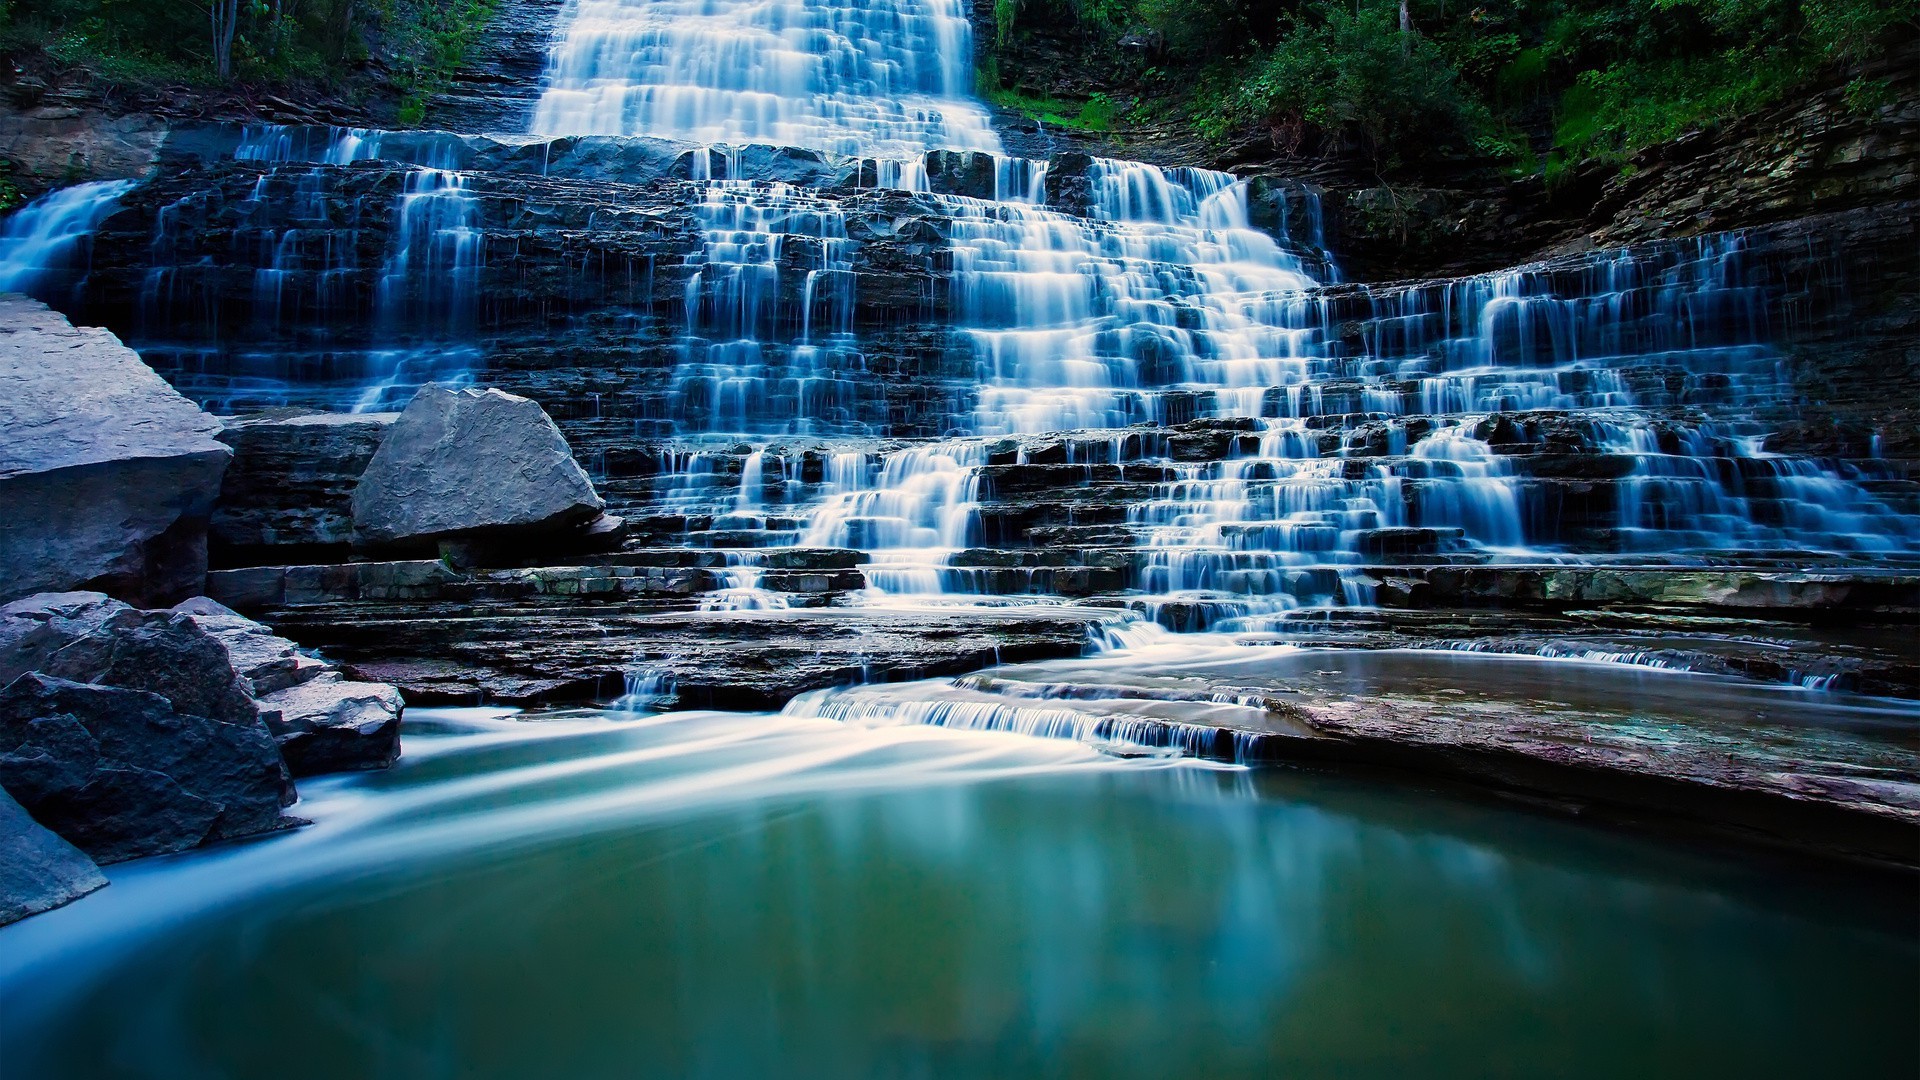 водопады воды водопад движения путешествия природа бассейн река мокрый красивые поток поток каскад на открытом воздухе лето